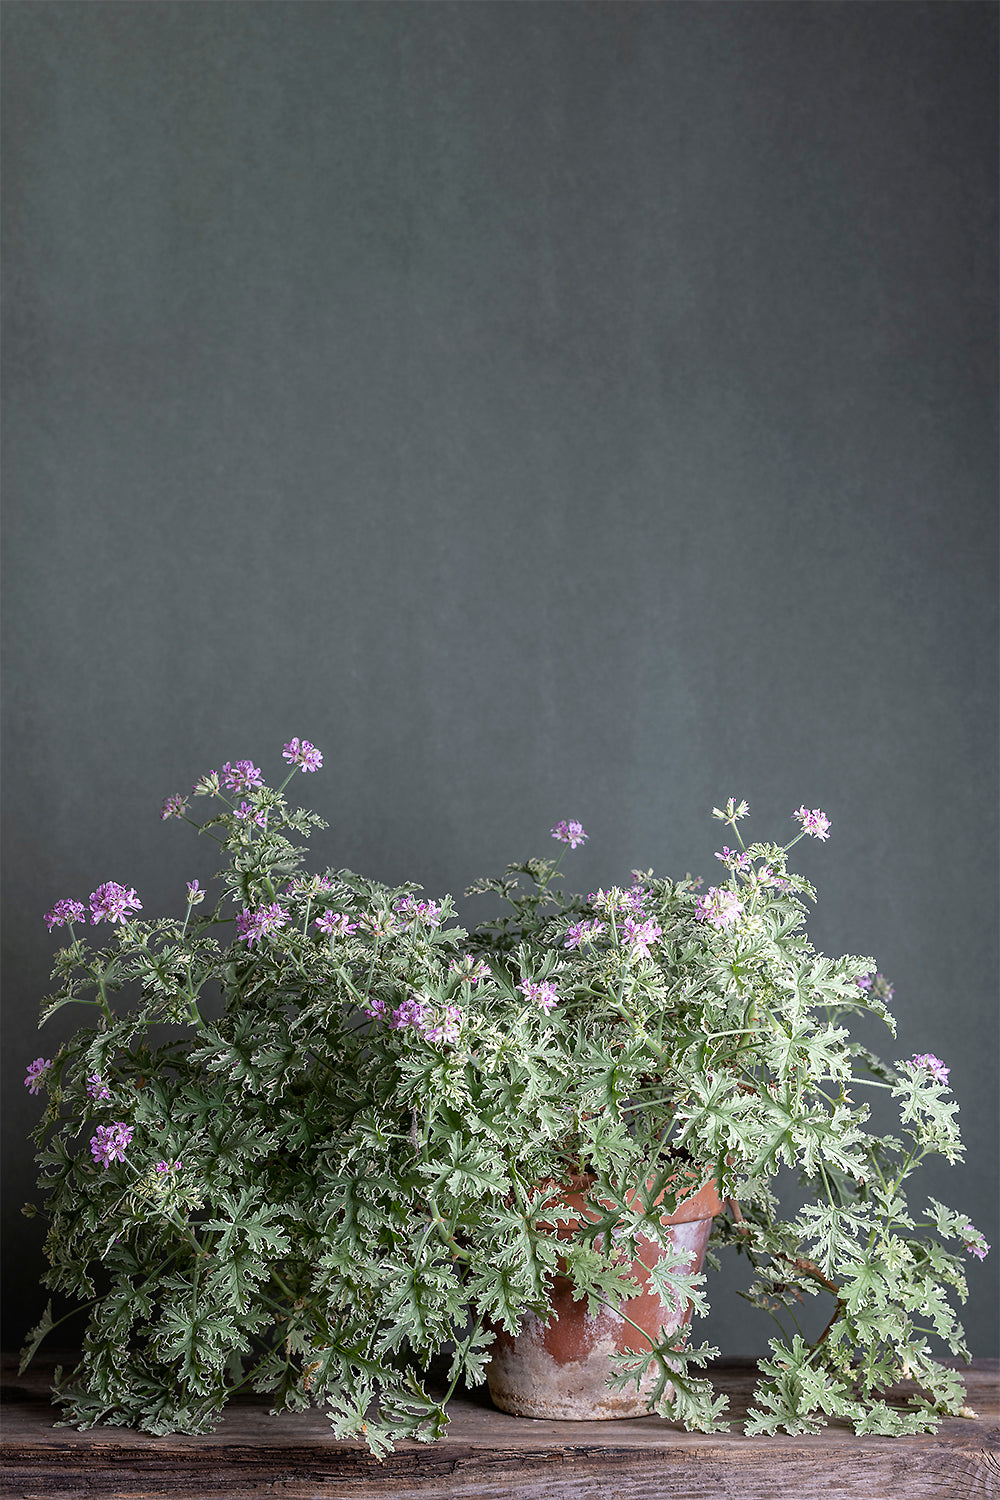 Pelargonium 'Lady Plymouth': geranio con incantevoli fiori color rosa-bianco, presentato con cura in un vaso di terracotta su un luminoso tavolo di legno.